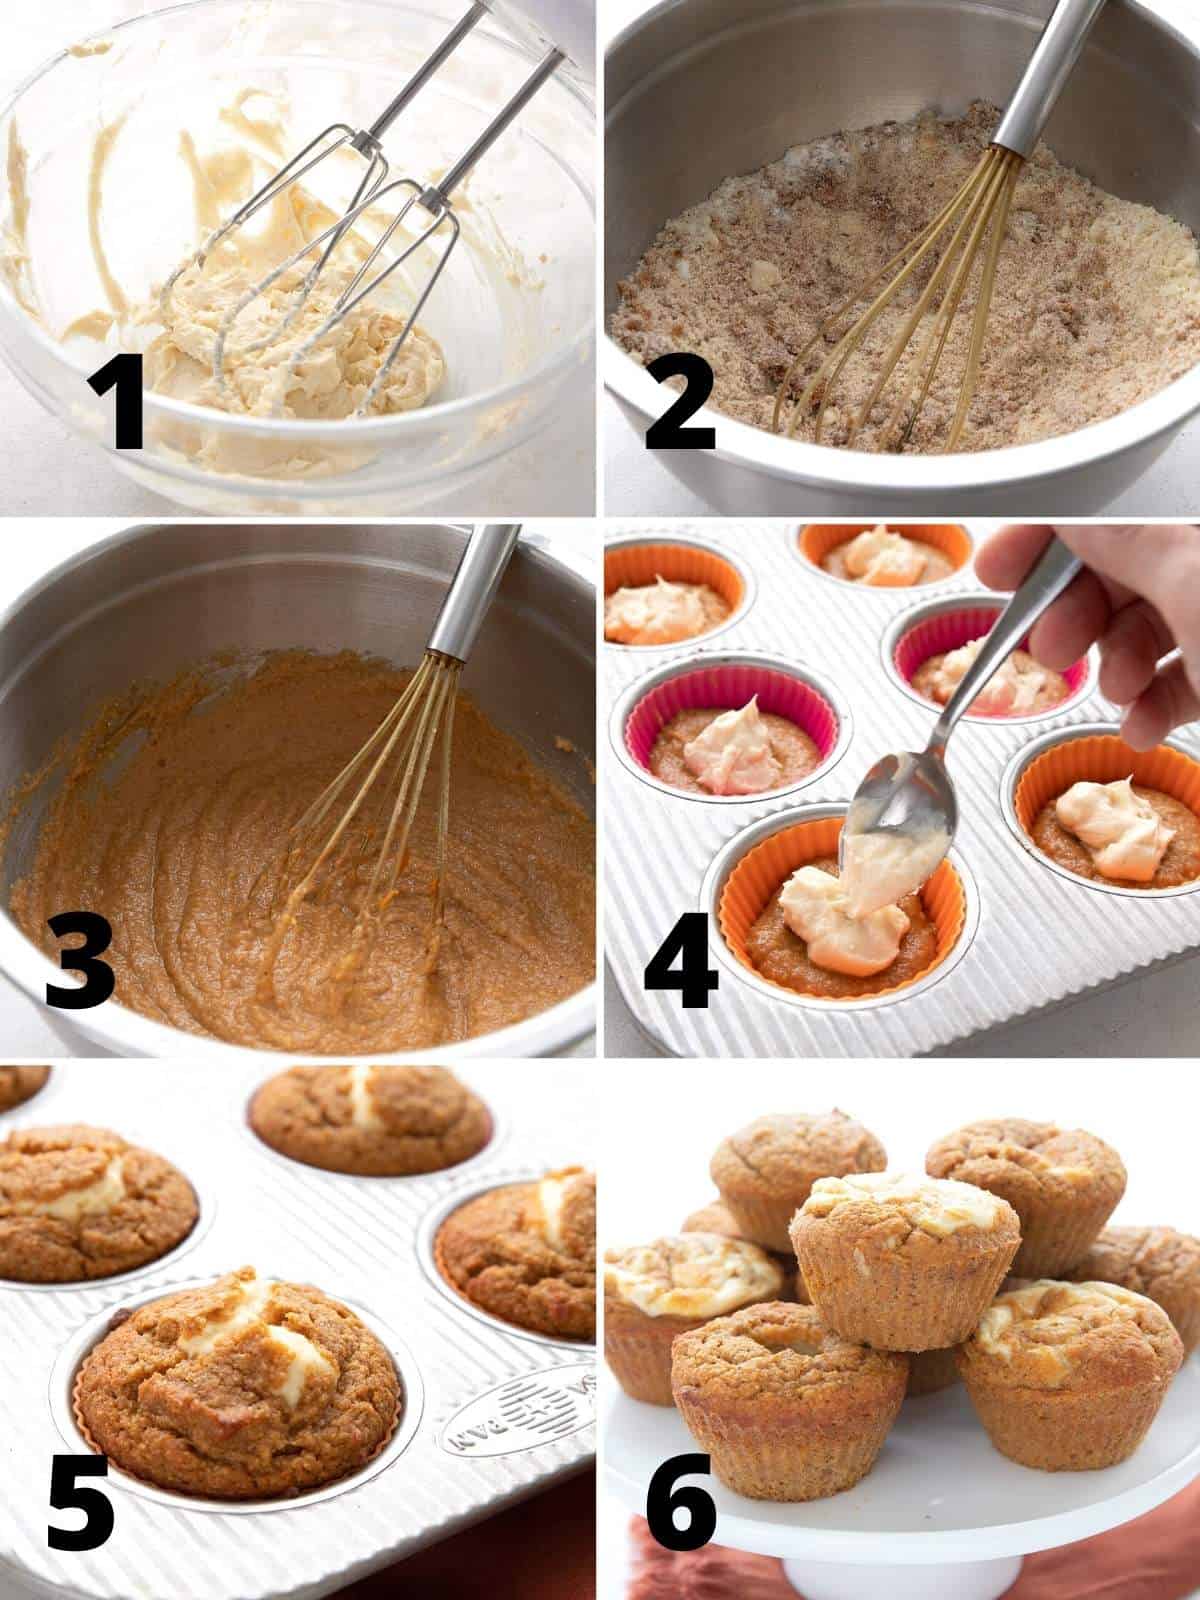 En collage av 6 bilder som viser fremgangsmåten for å lage keto-gresskarmuffins. 